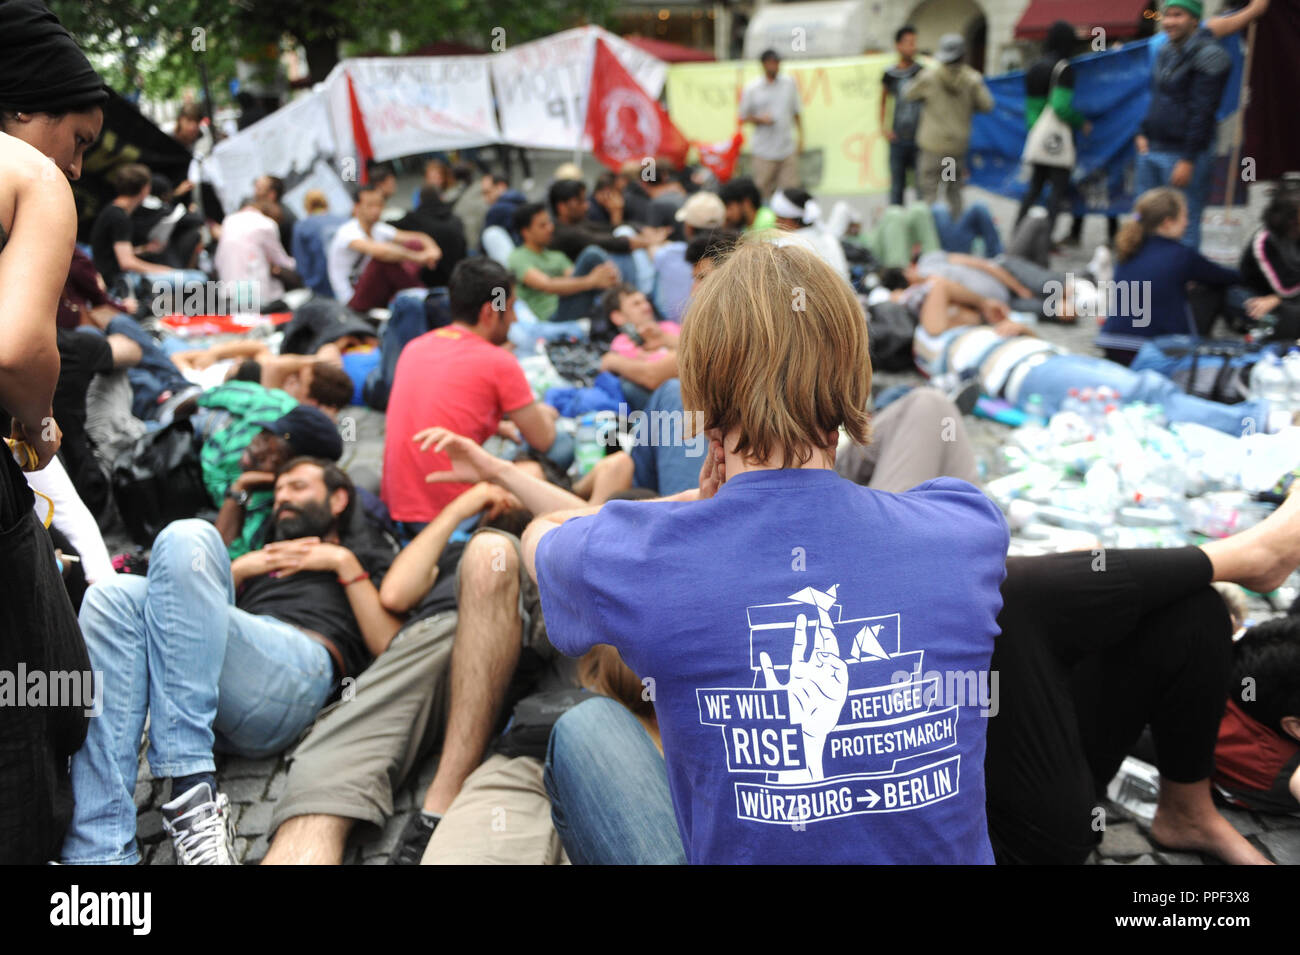 Flüchtlinge gehen im Hungerstreik für bessere Lebensbedingungen und Behandlung am Rindermarkt in München zu zeigen. Stockfoto